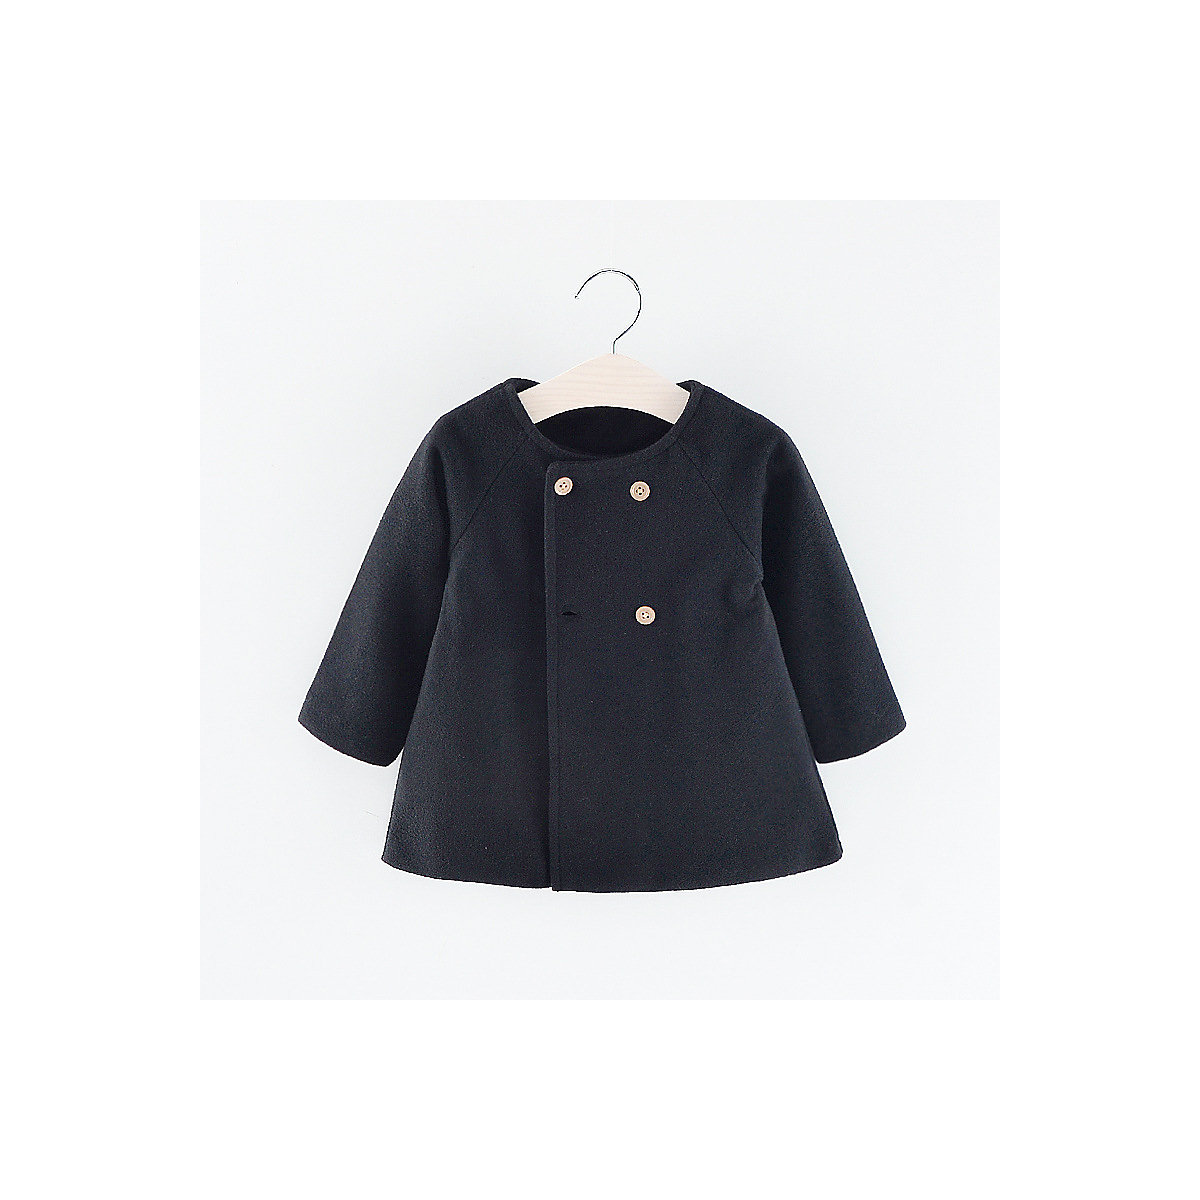 Vicabo Mantel Jacke für Baby Mädchen Mäntel für Mädchen schwarz